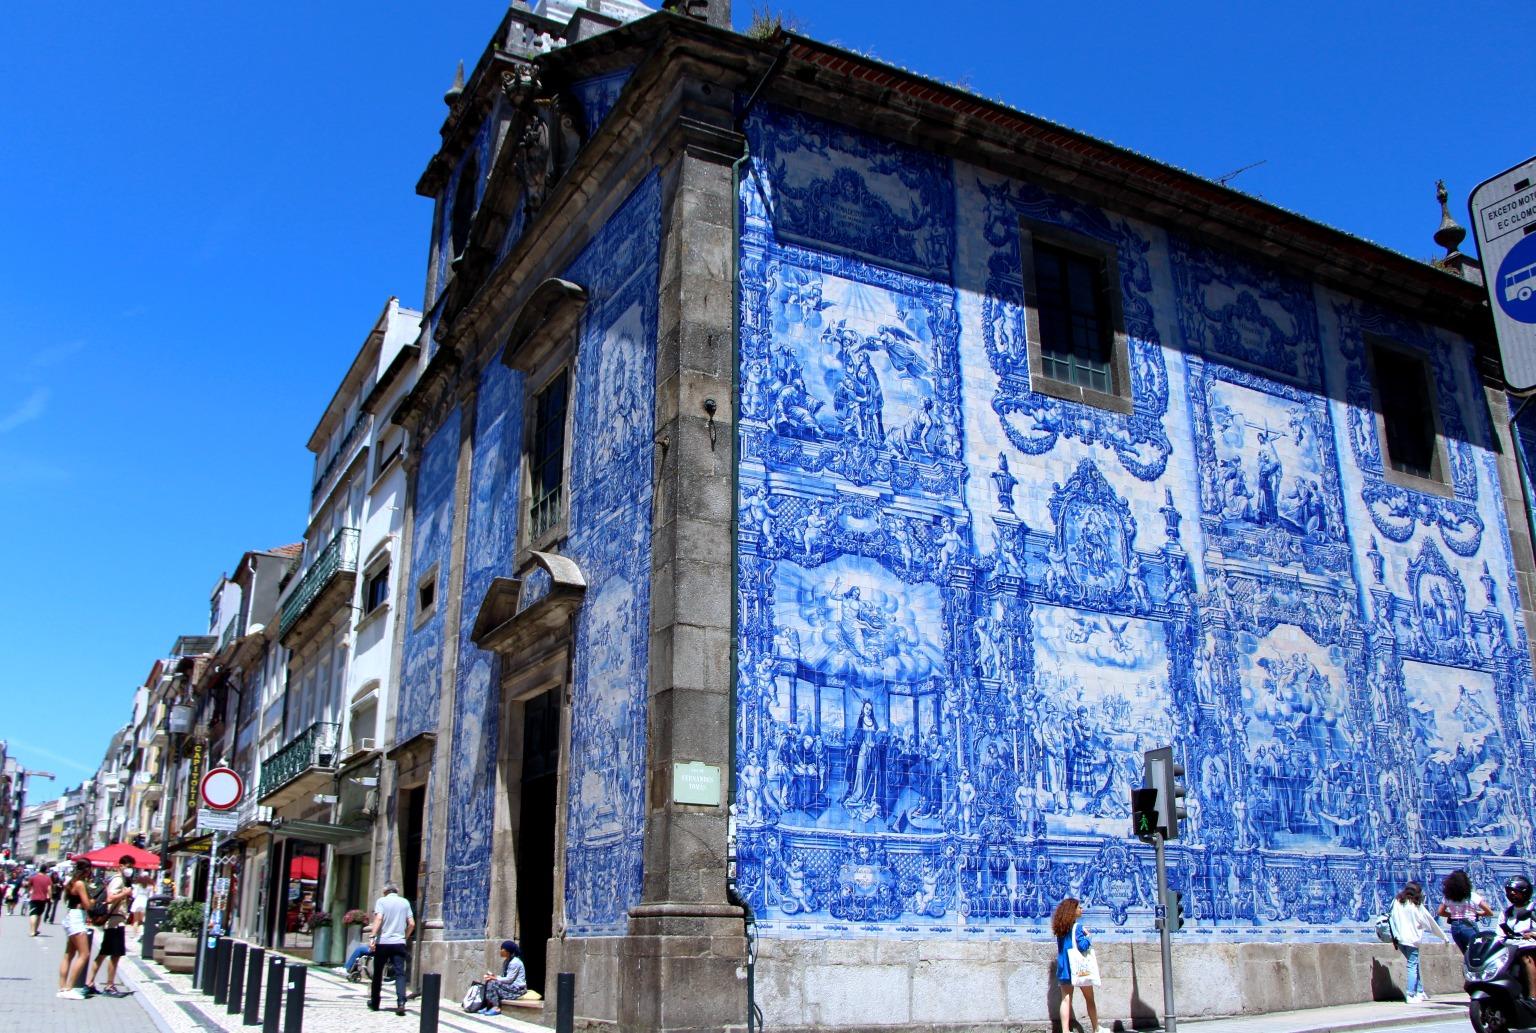 A Capela das Almas, adornada com belos azulejos, mostra a mestria artística portuguesa.